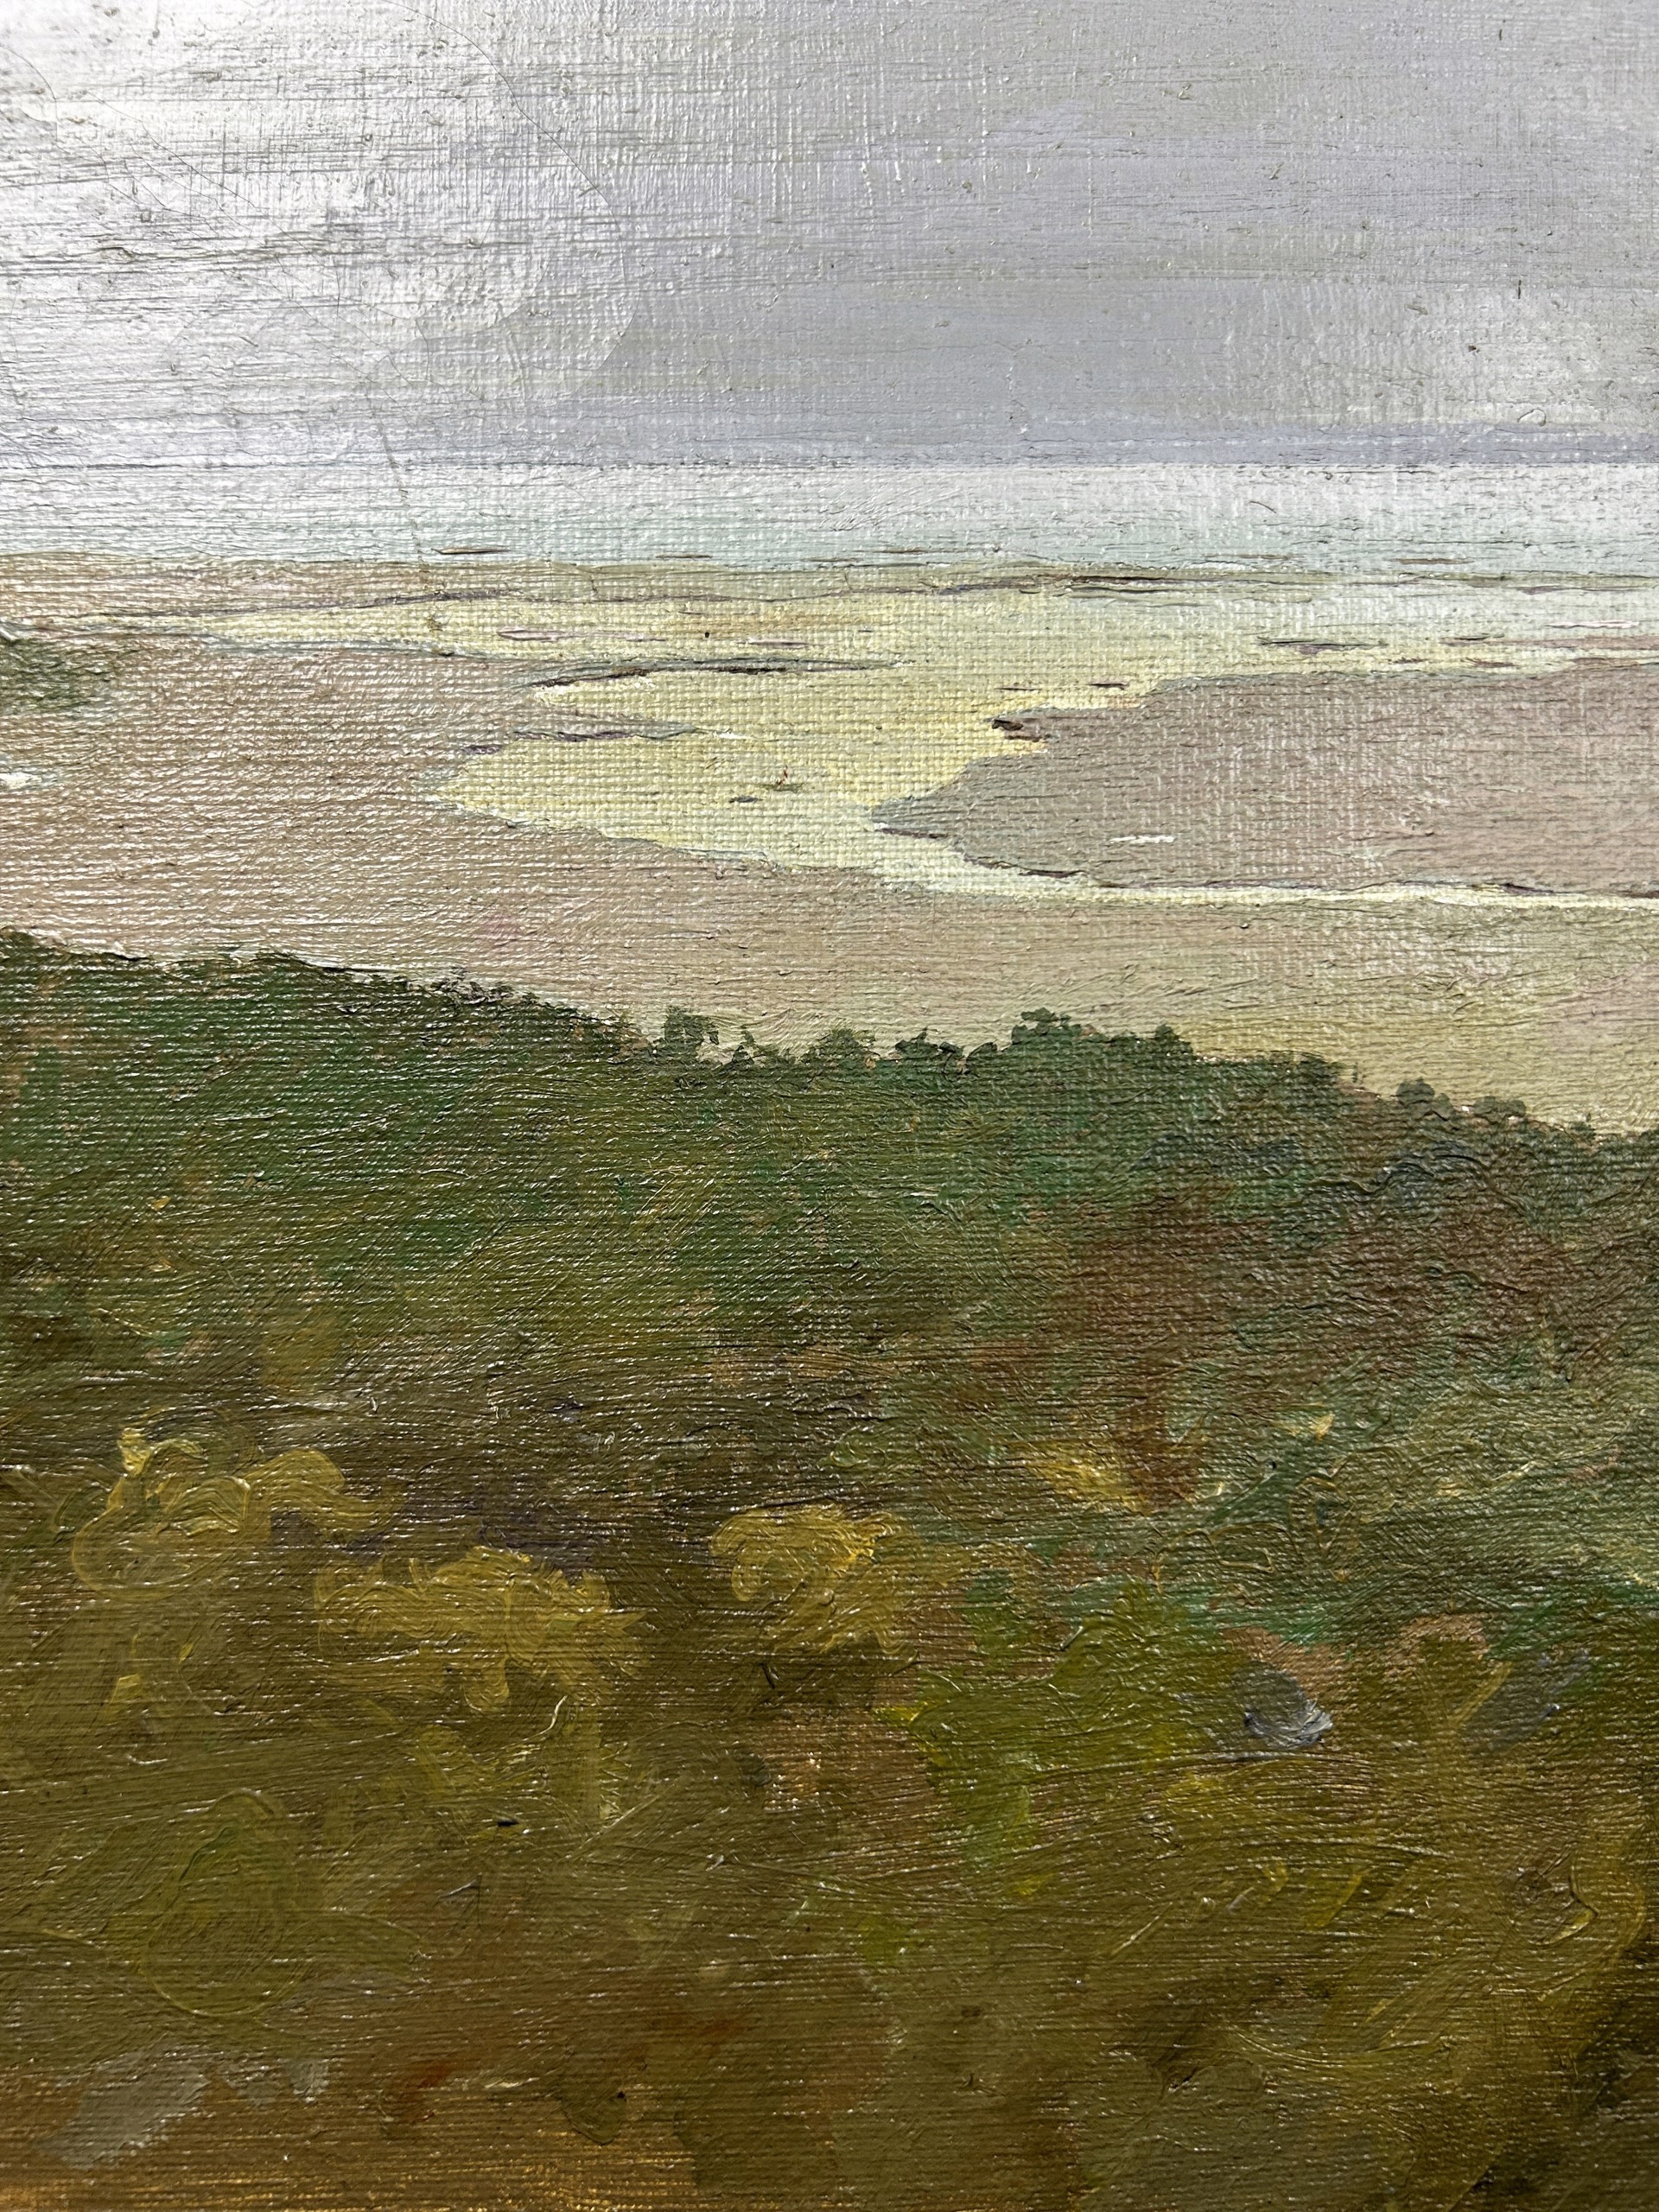 The Pamet River by Arthur Cohen